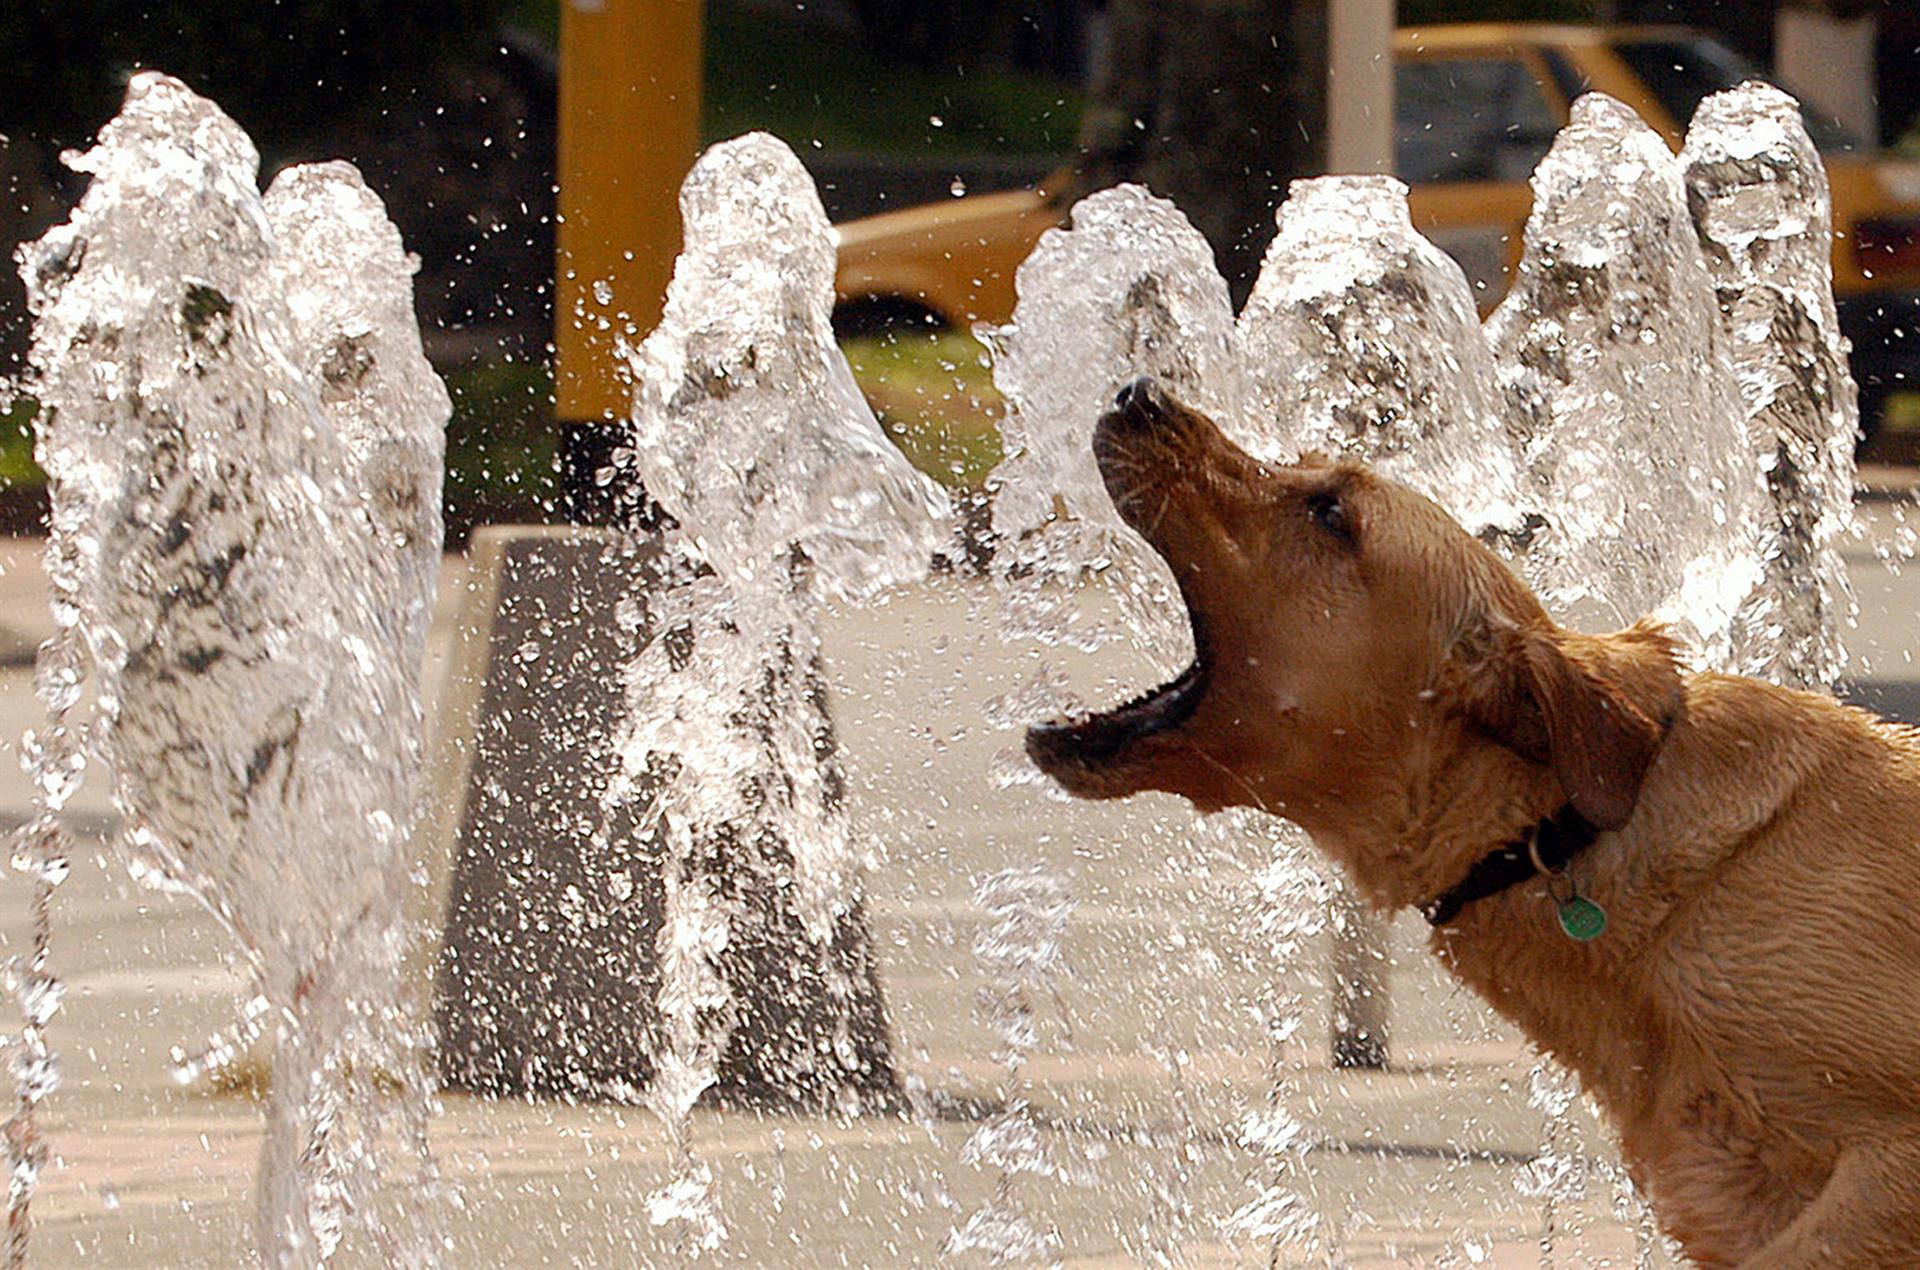 Los perros muerden más en días muy calurosos y con niveles de contaminación elevados